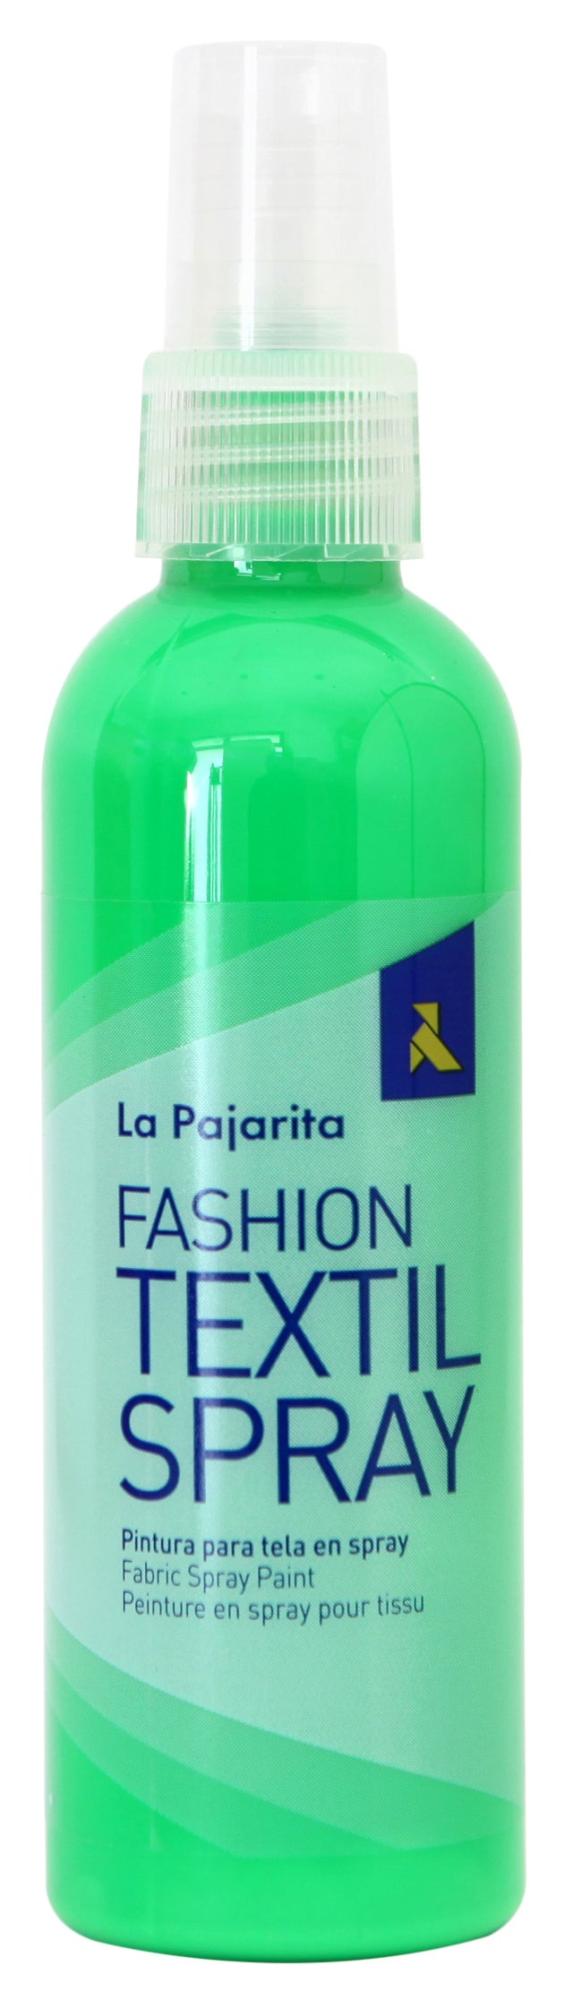 Spray Textil La Pajarita 100ML Fluor | Merlin